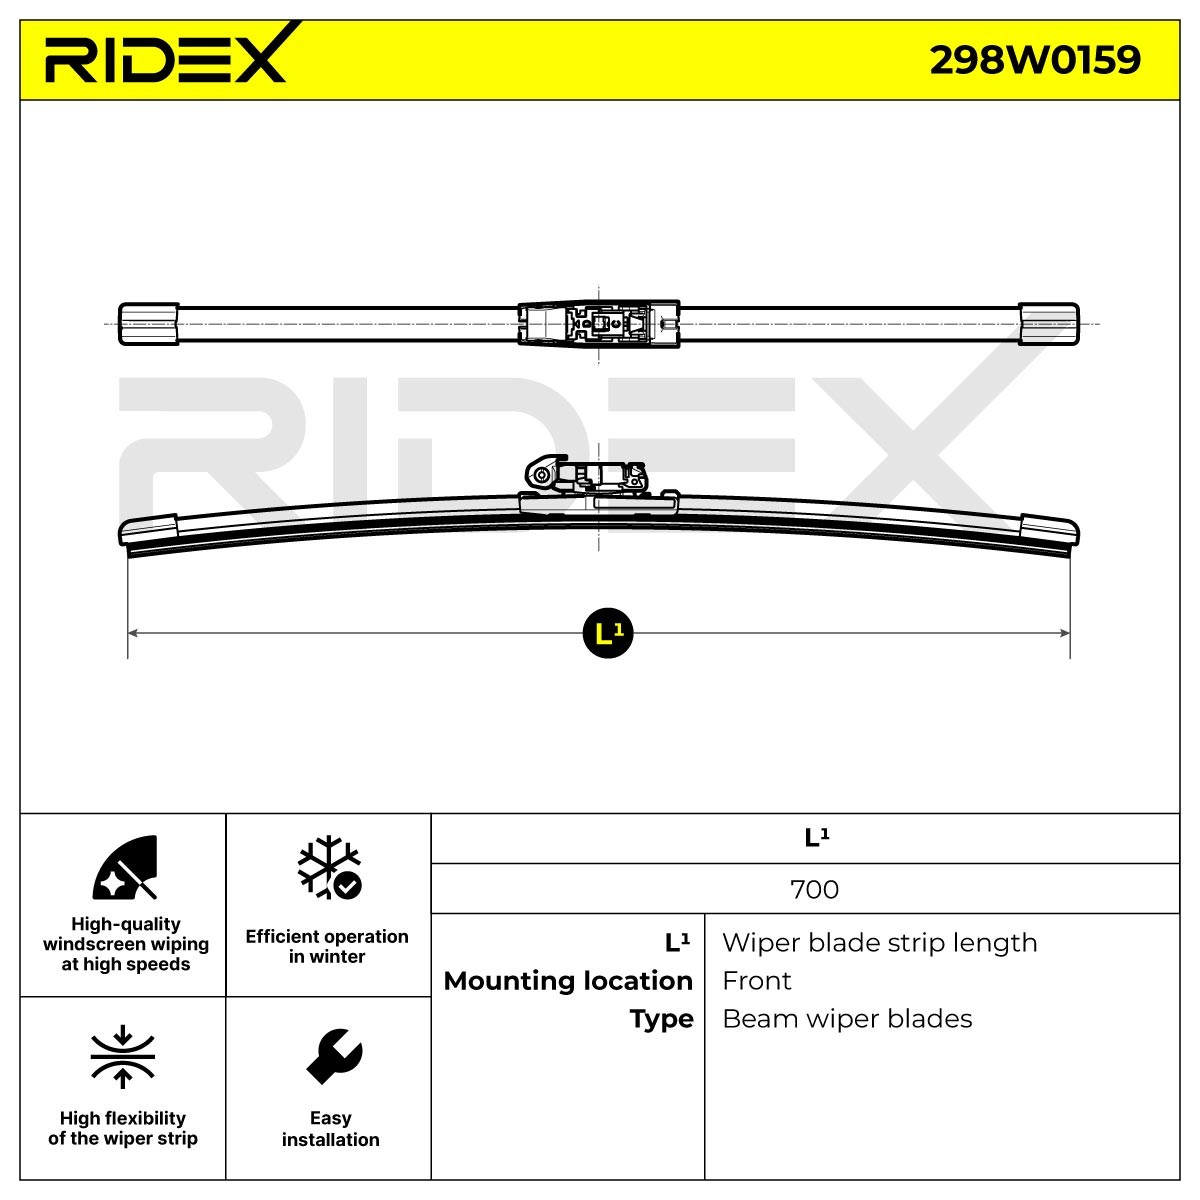 298W0159 RIDEX Scheibenwischer 700 mm vorne, Rahmenlos, 28 Zoll 298W0159  ❱❱❱ Preis und Erfahrungen